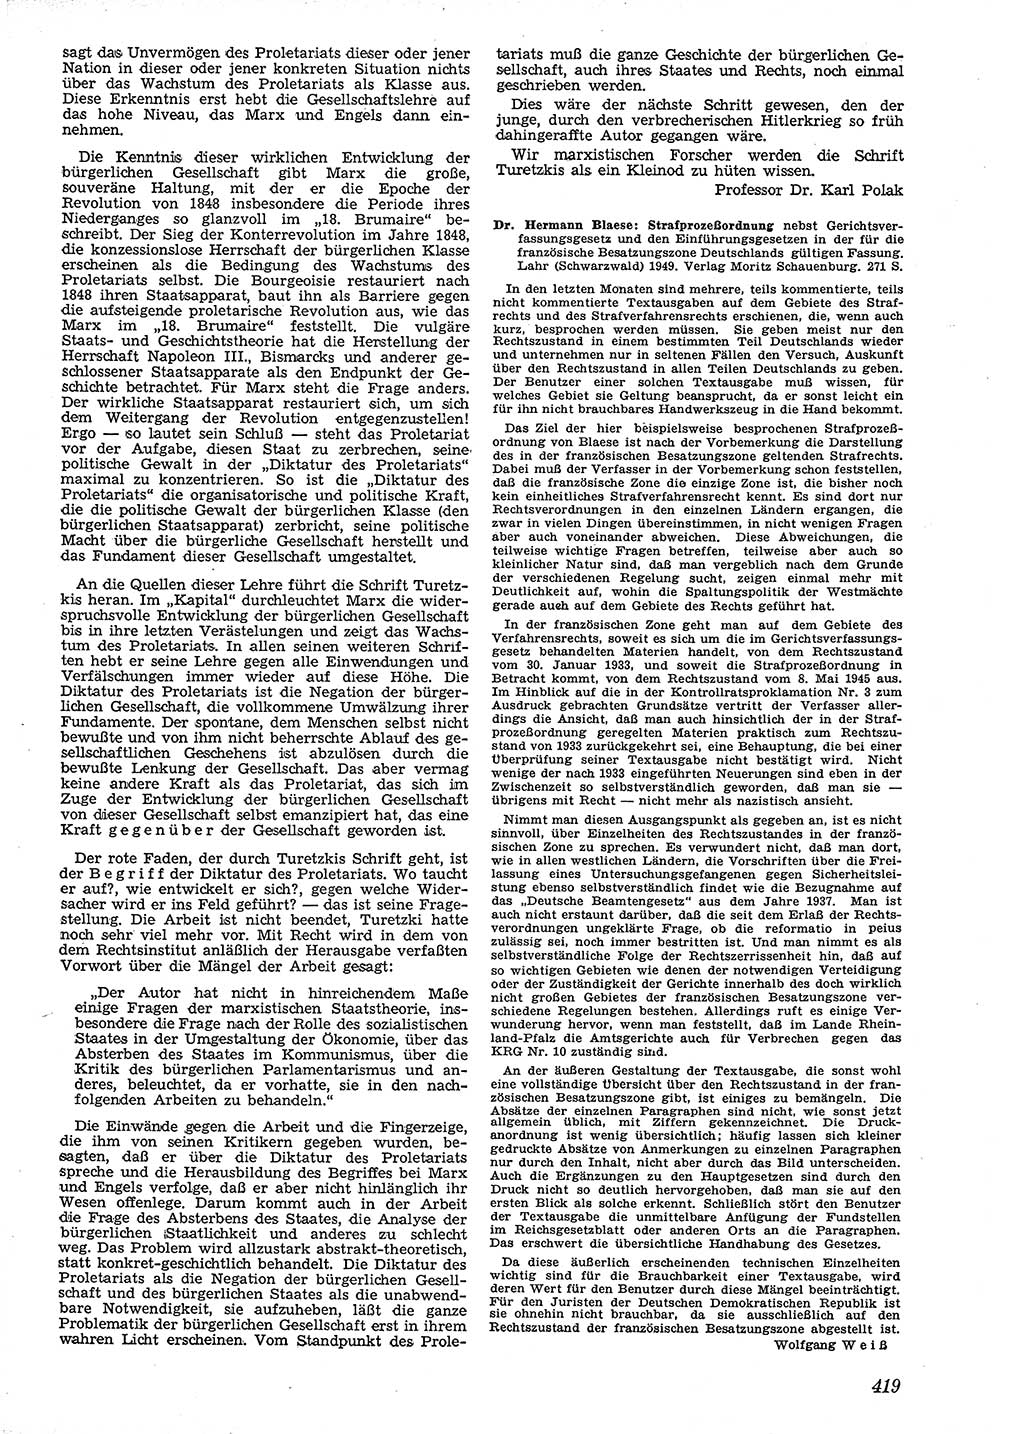 Neue Justiz (NJ), Zeitschrift für Recht und Rechtswissenschaft [Deutsche Demokratische Republik (DDR)], 4. Jahrgang 1950, Seite 419 (NJ DDR 1950, S. 419)